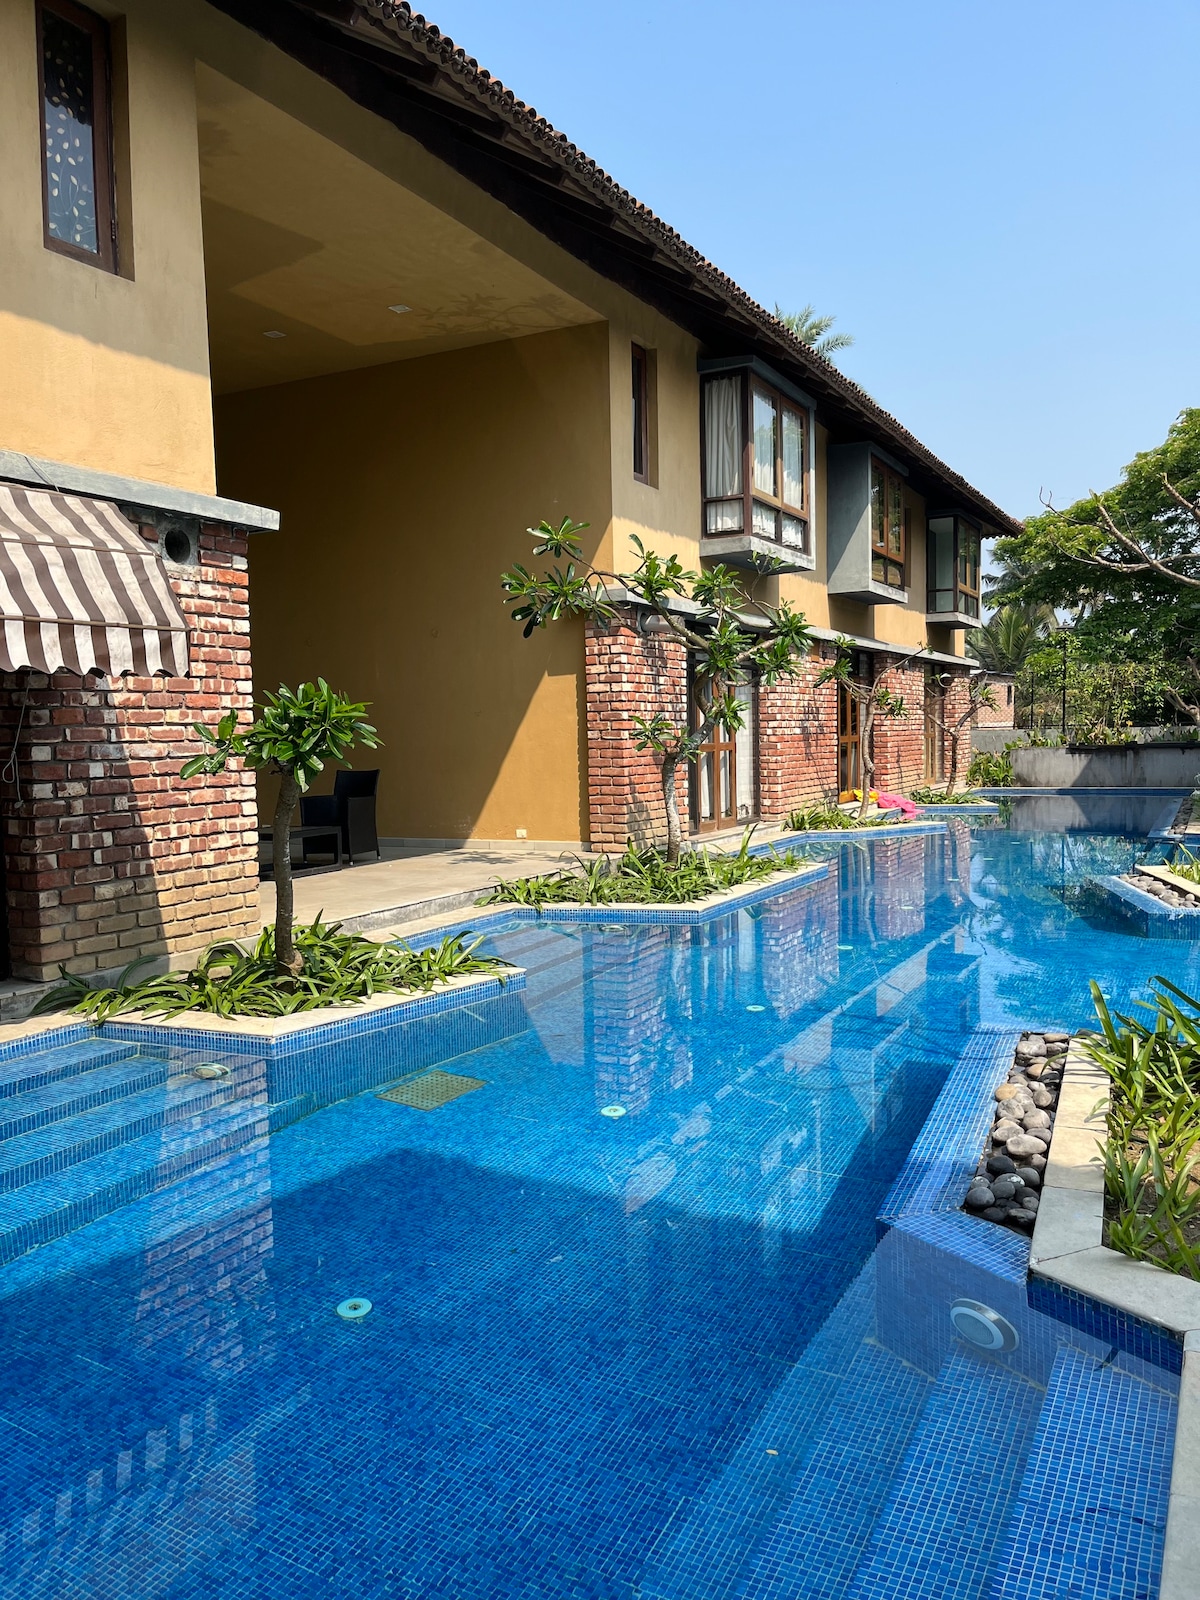 Raichak优雅的复式房屋，可欣赏泳池景观。